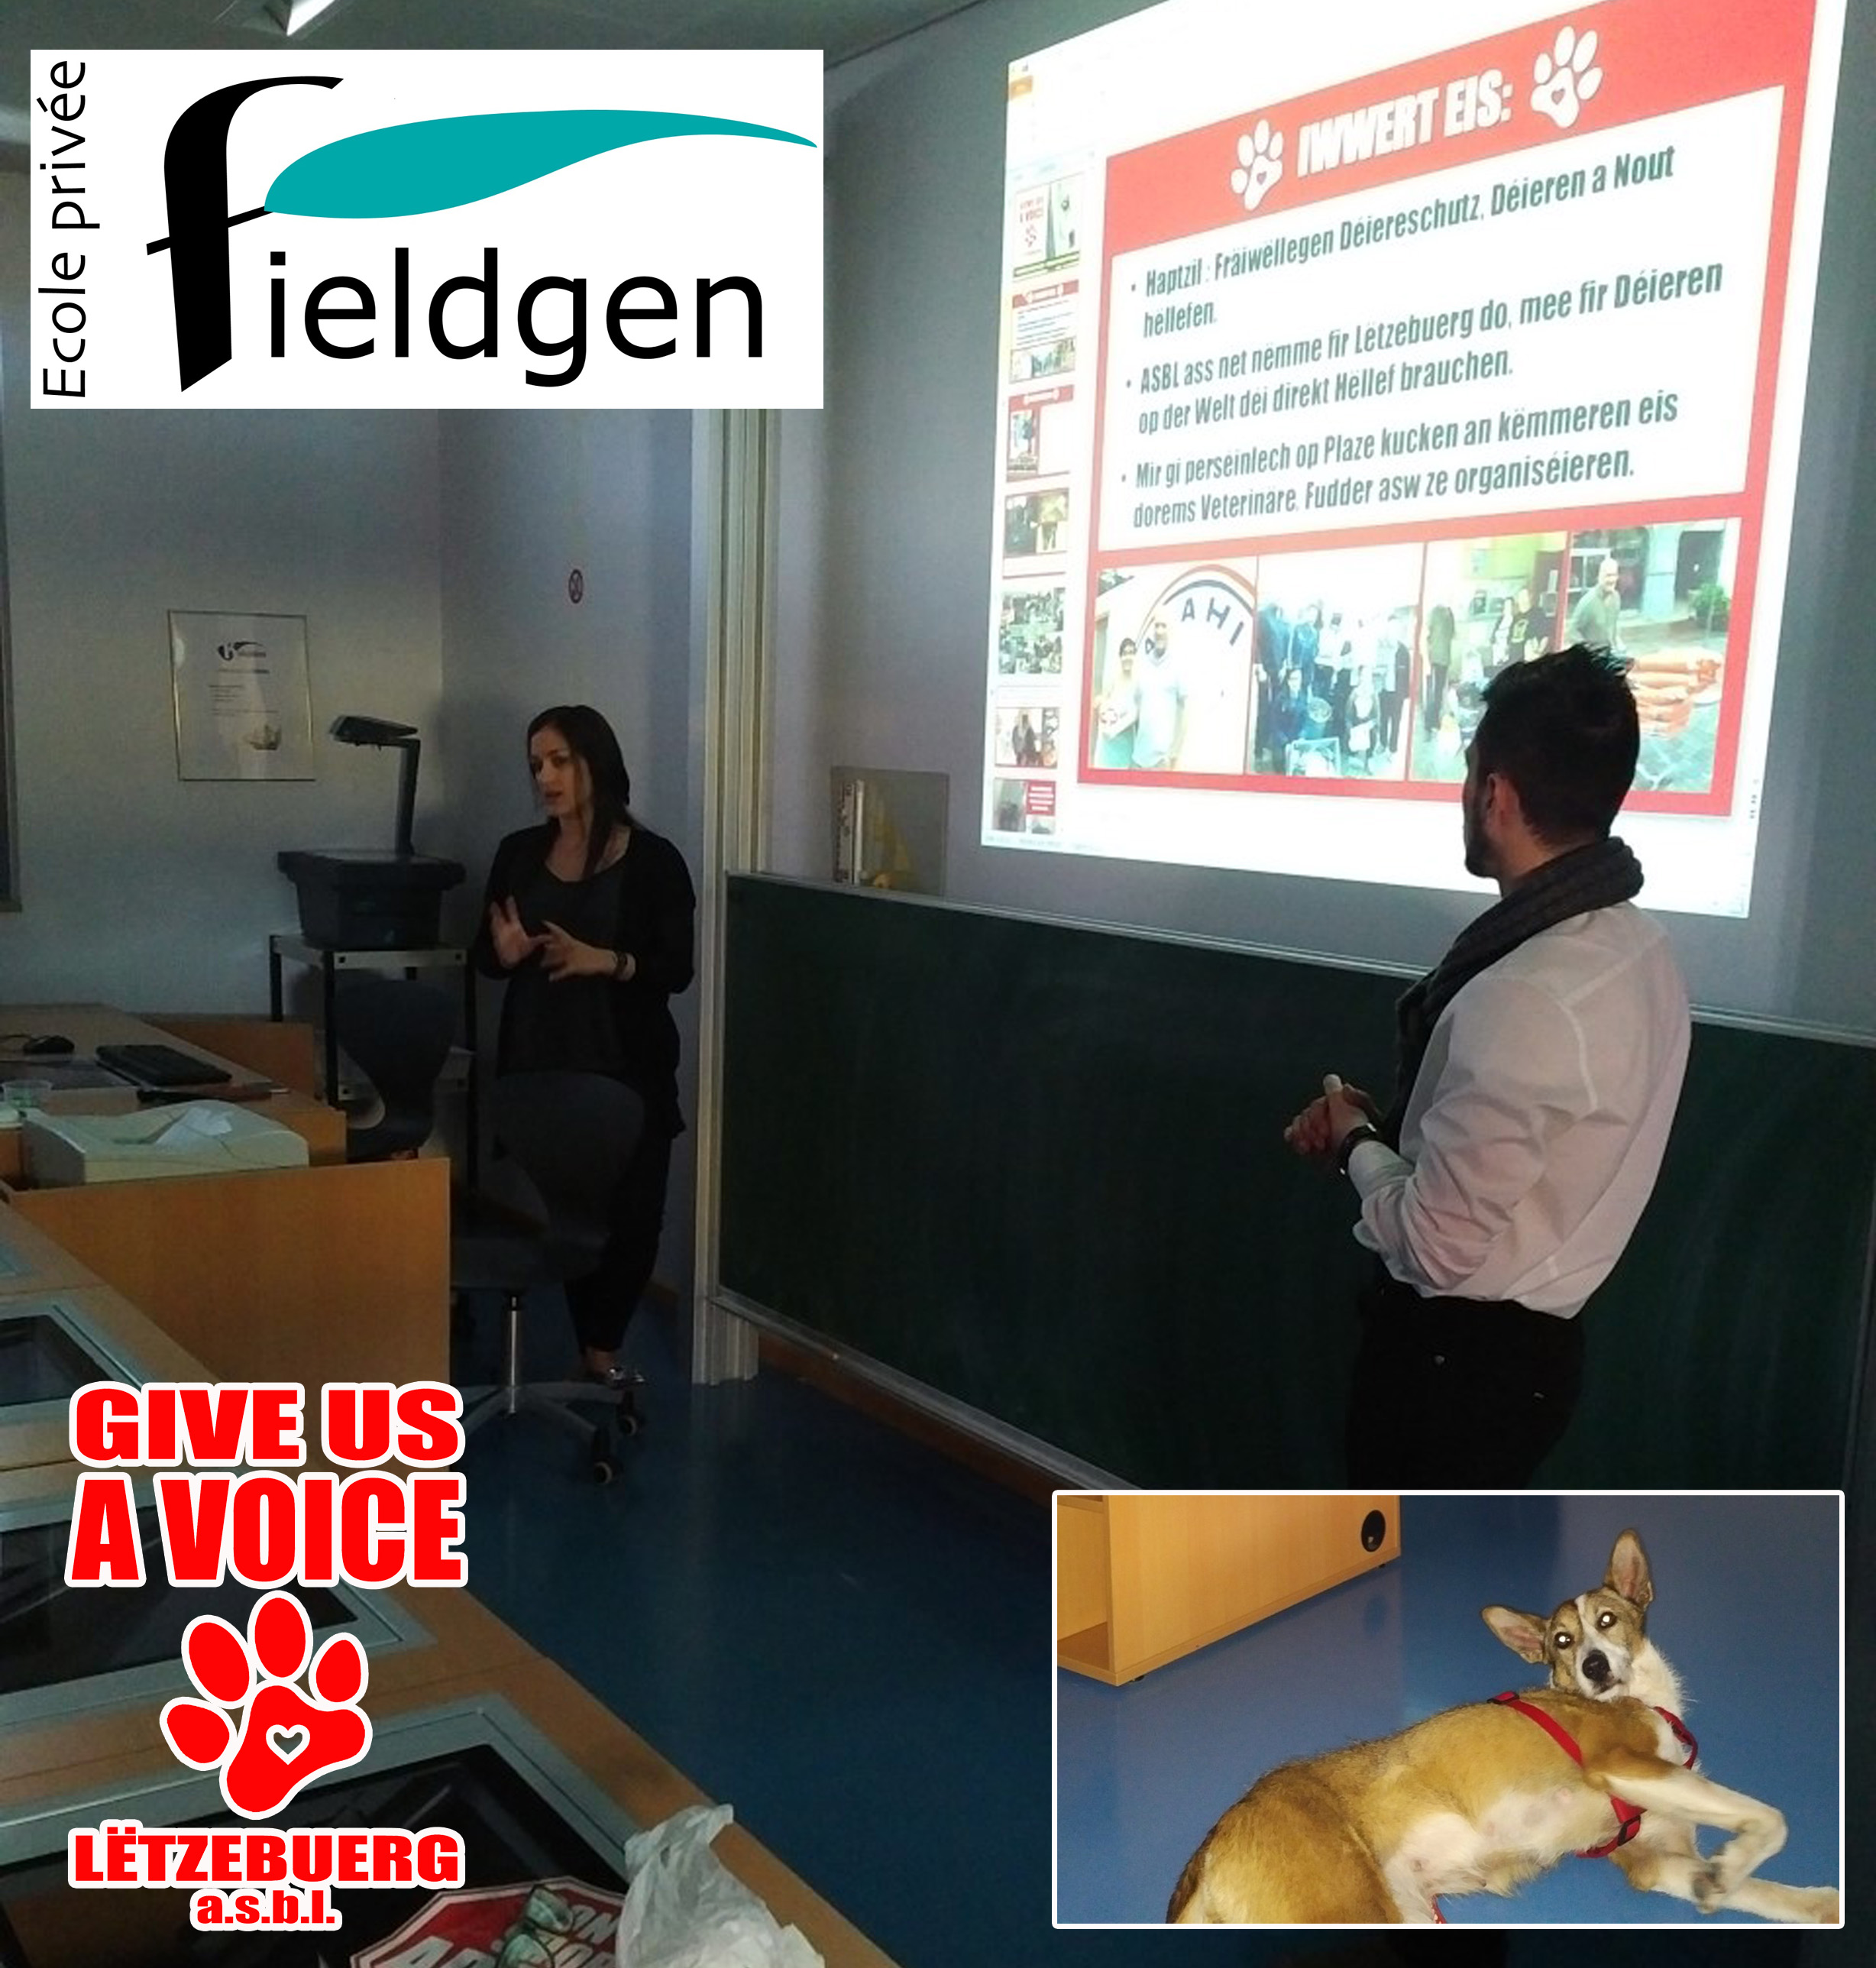 Fieldgen presentation copy